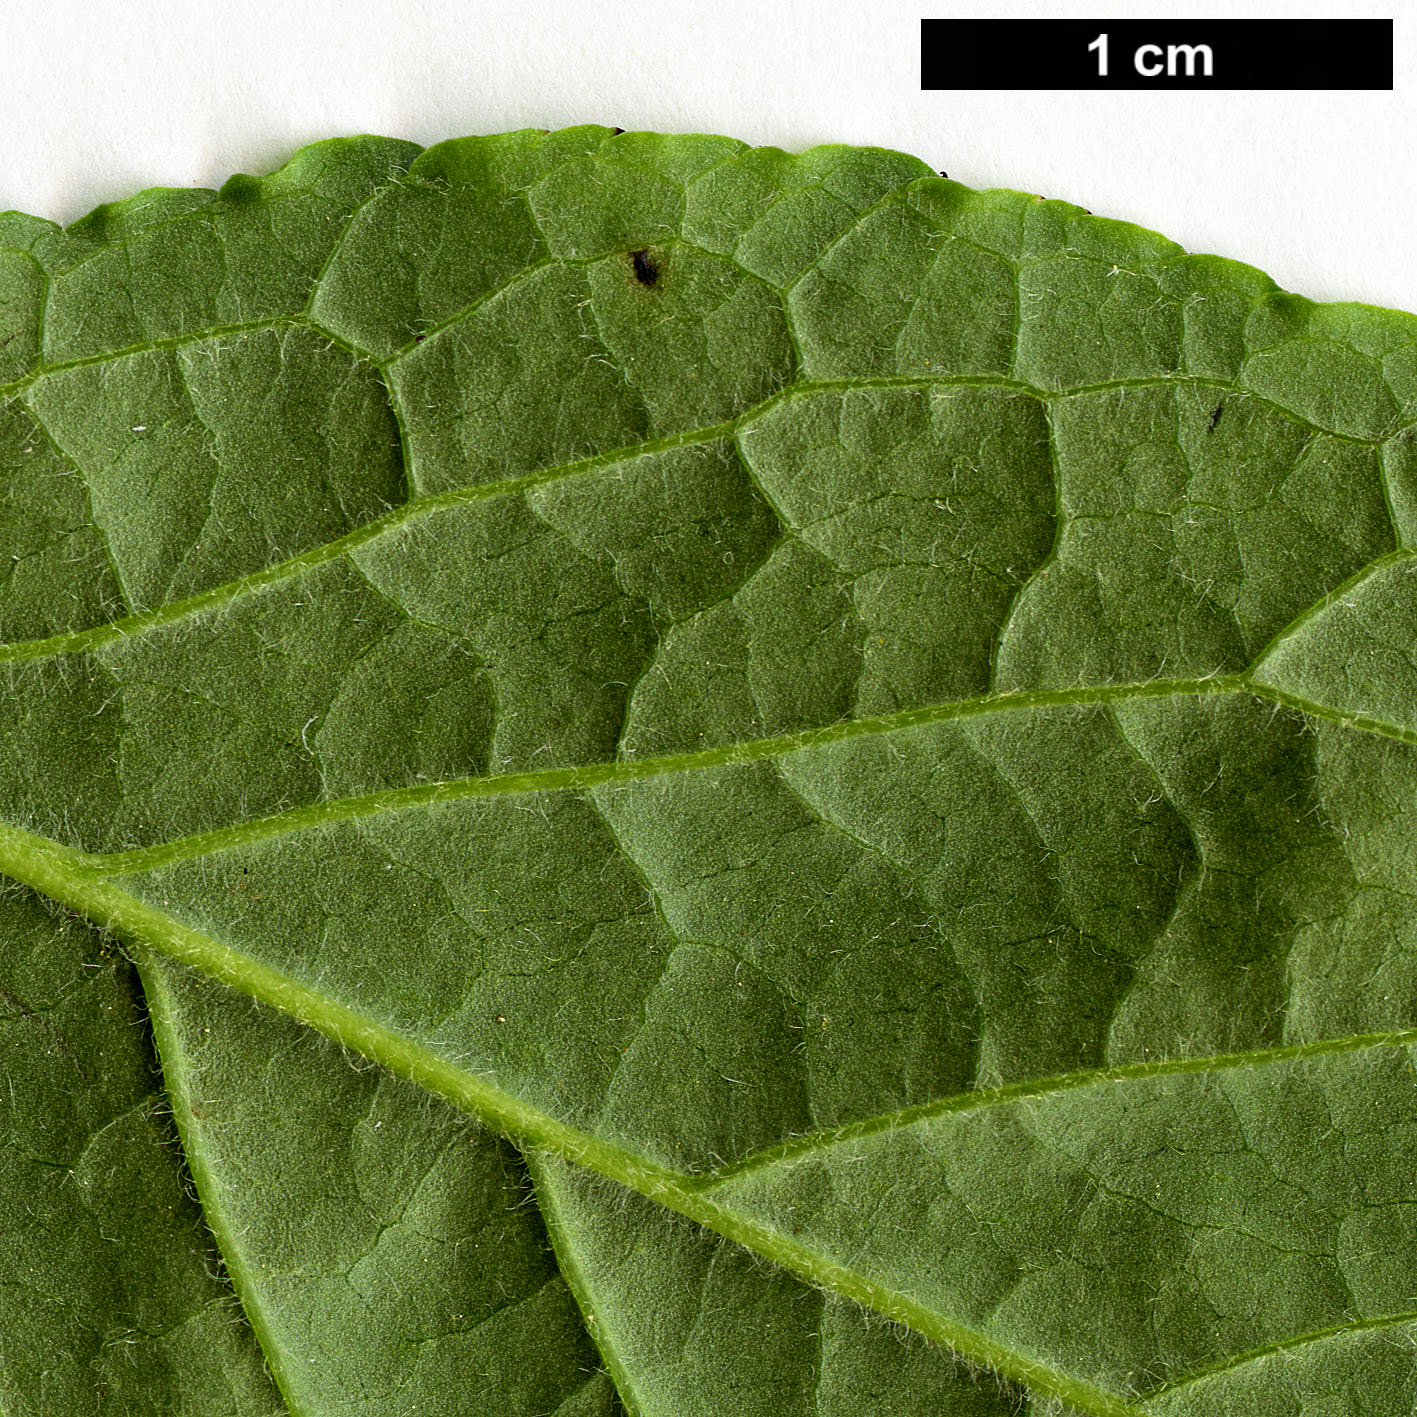 High resolution image: Family: Aquifoliaceae - Genus: Ilex - Taxon: collina